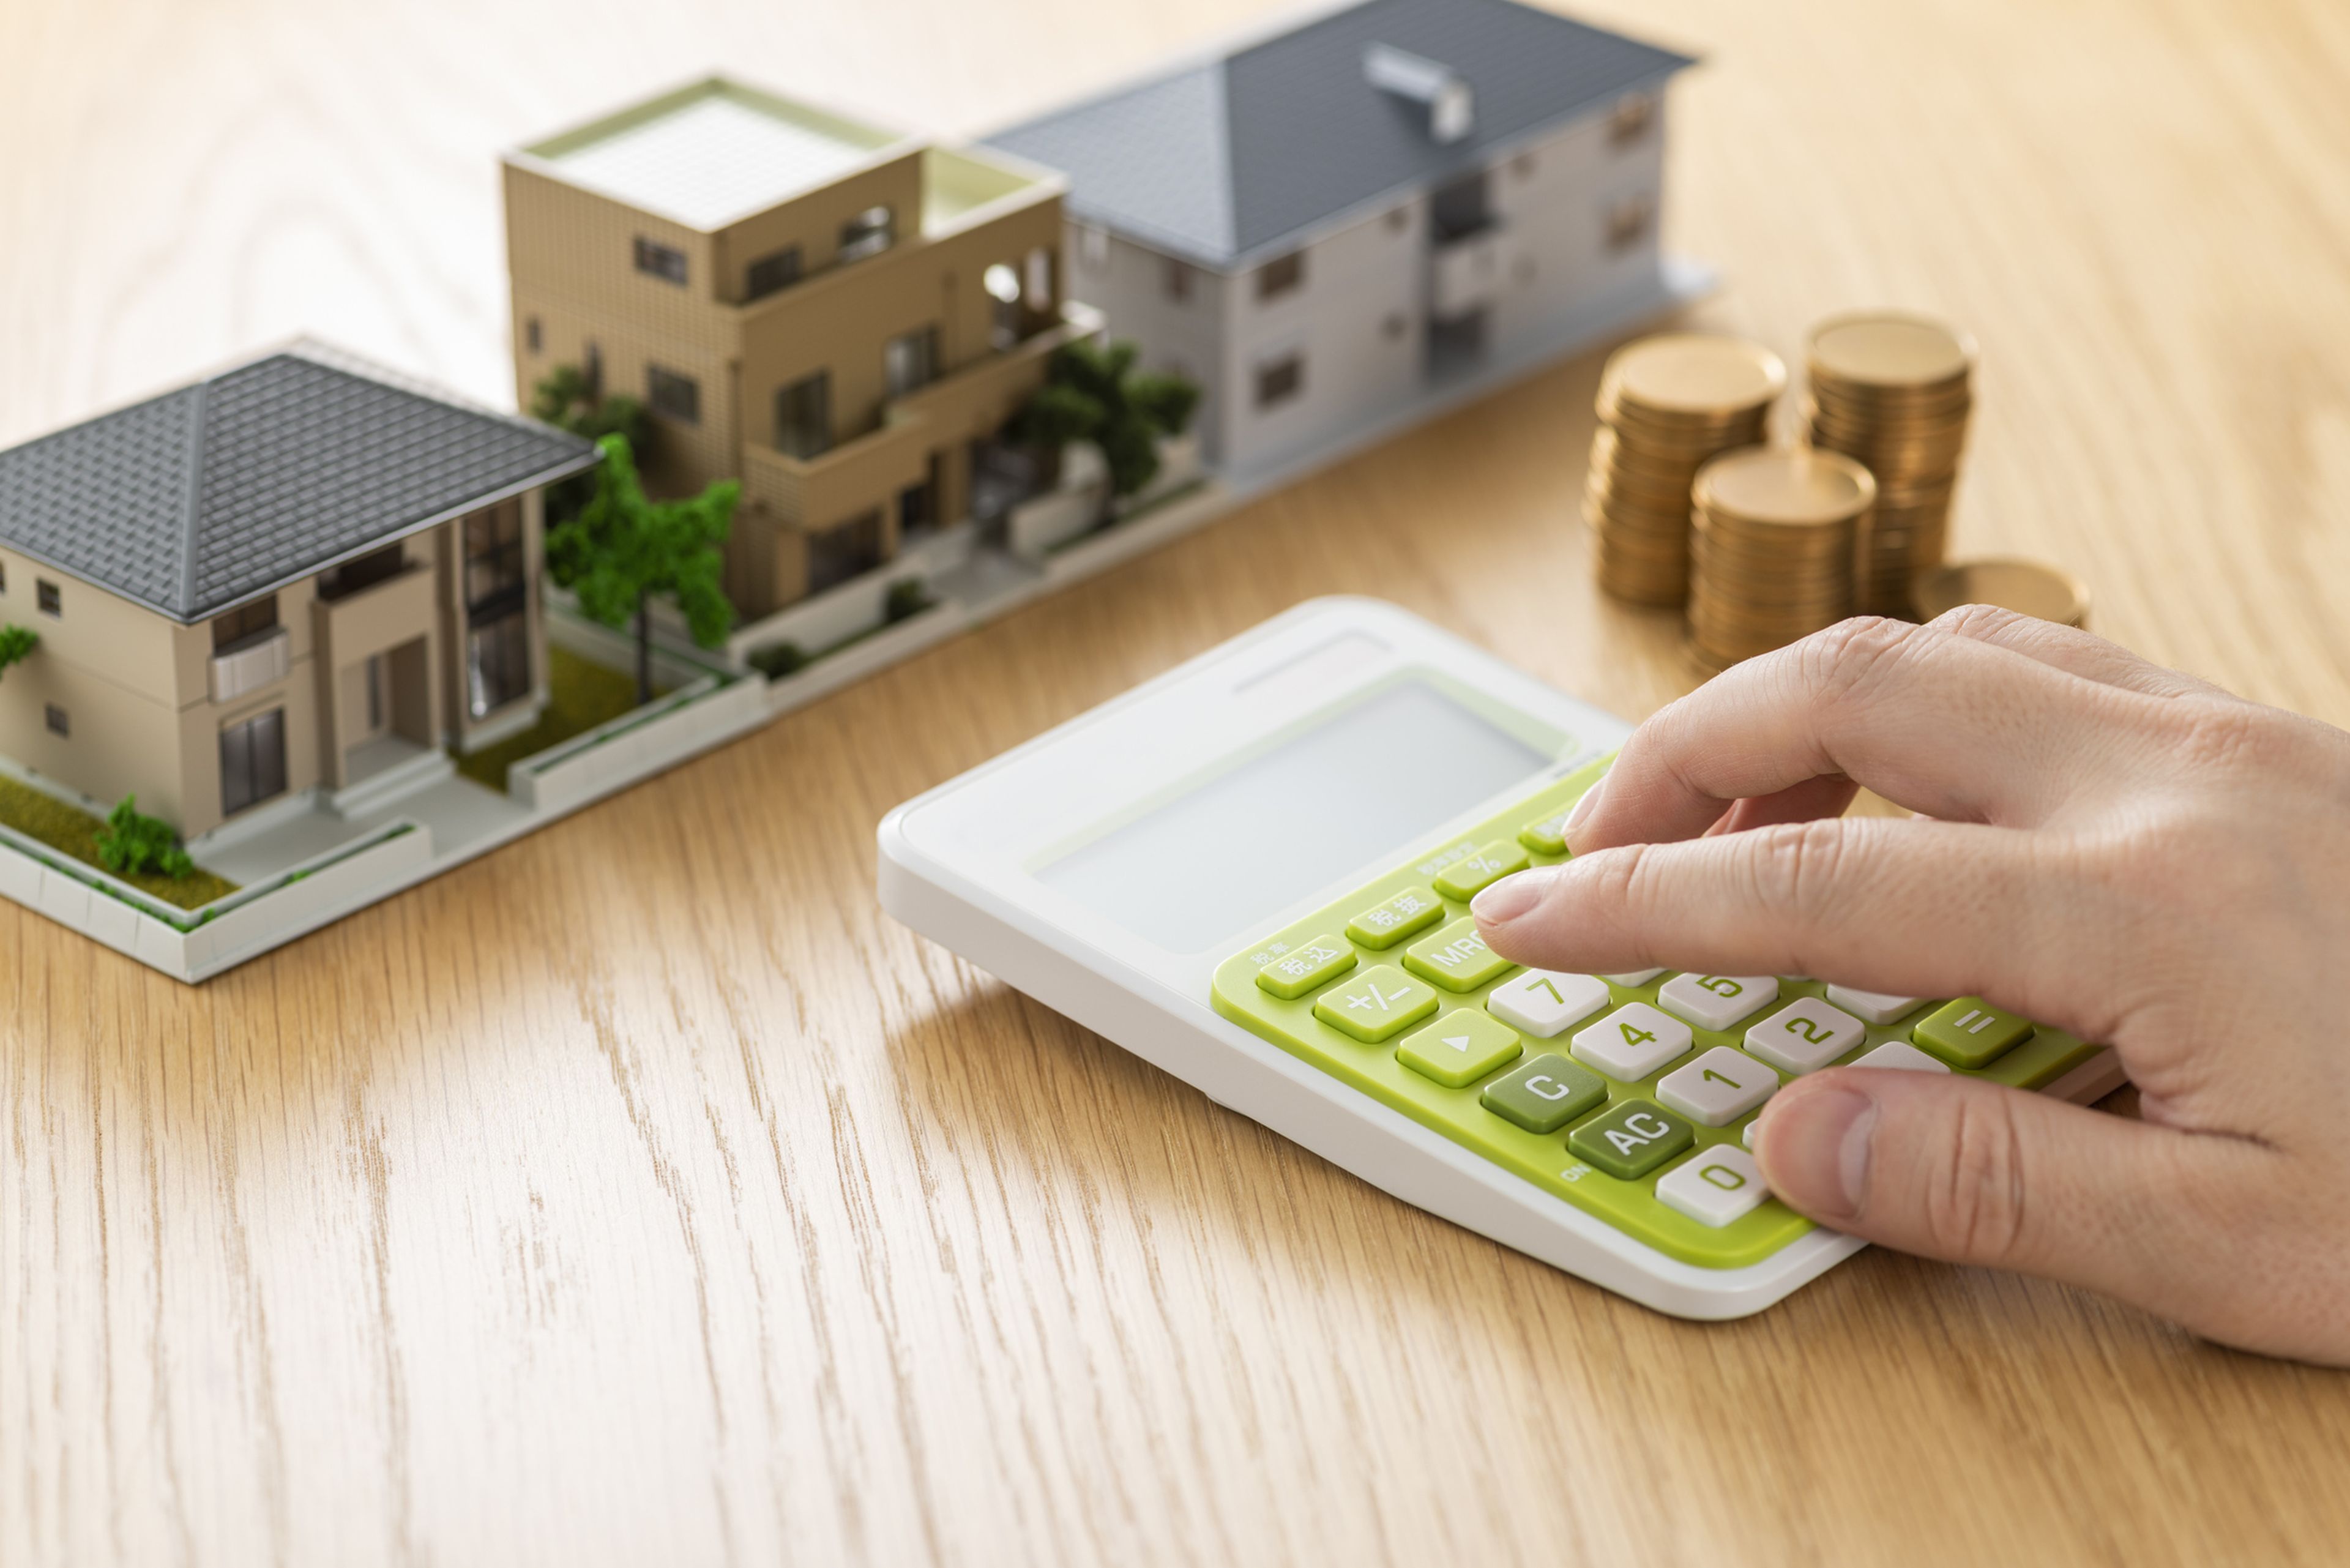 Una persona con una calculadora, varias monedas y una maqueta de varios edificios.